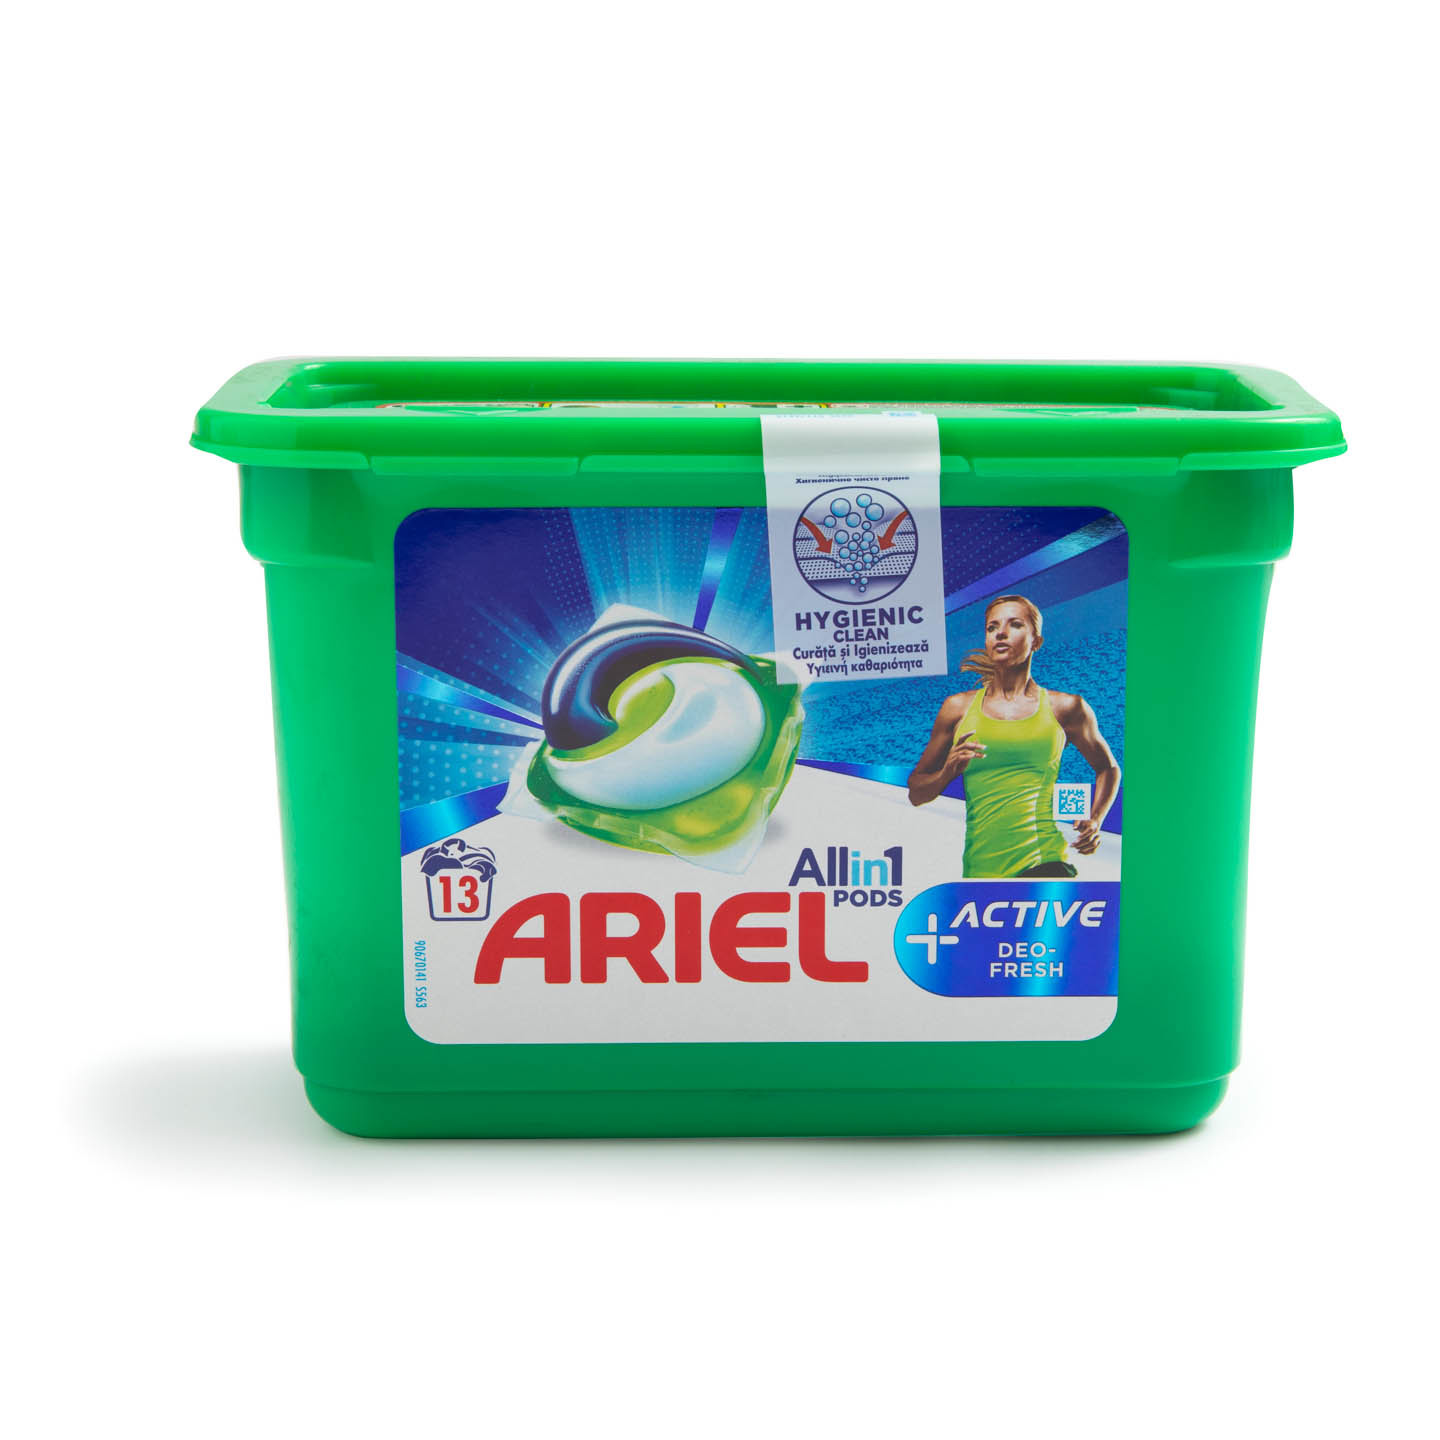 Detergent automat, Ariel 13 capsule